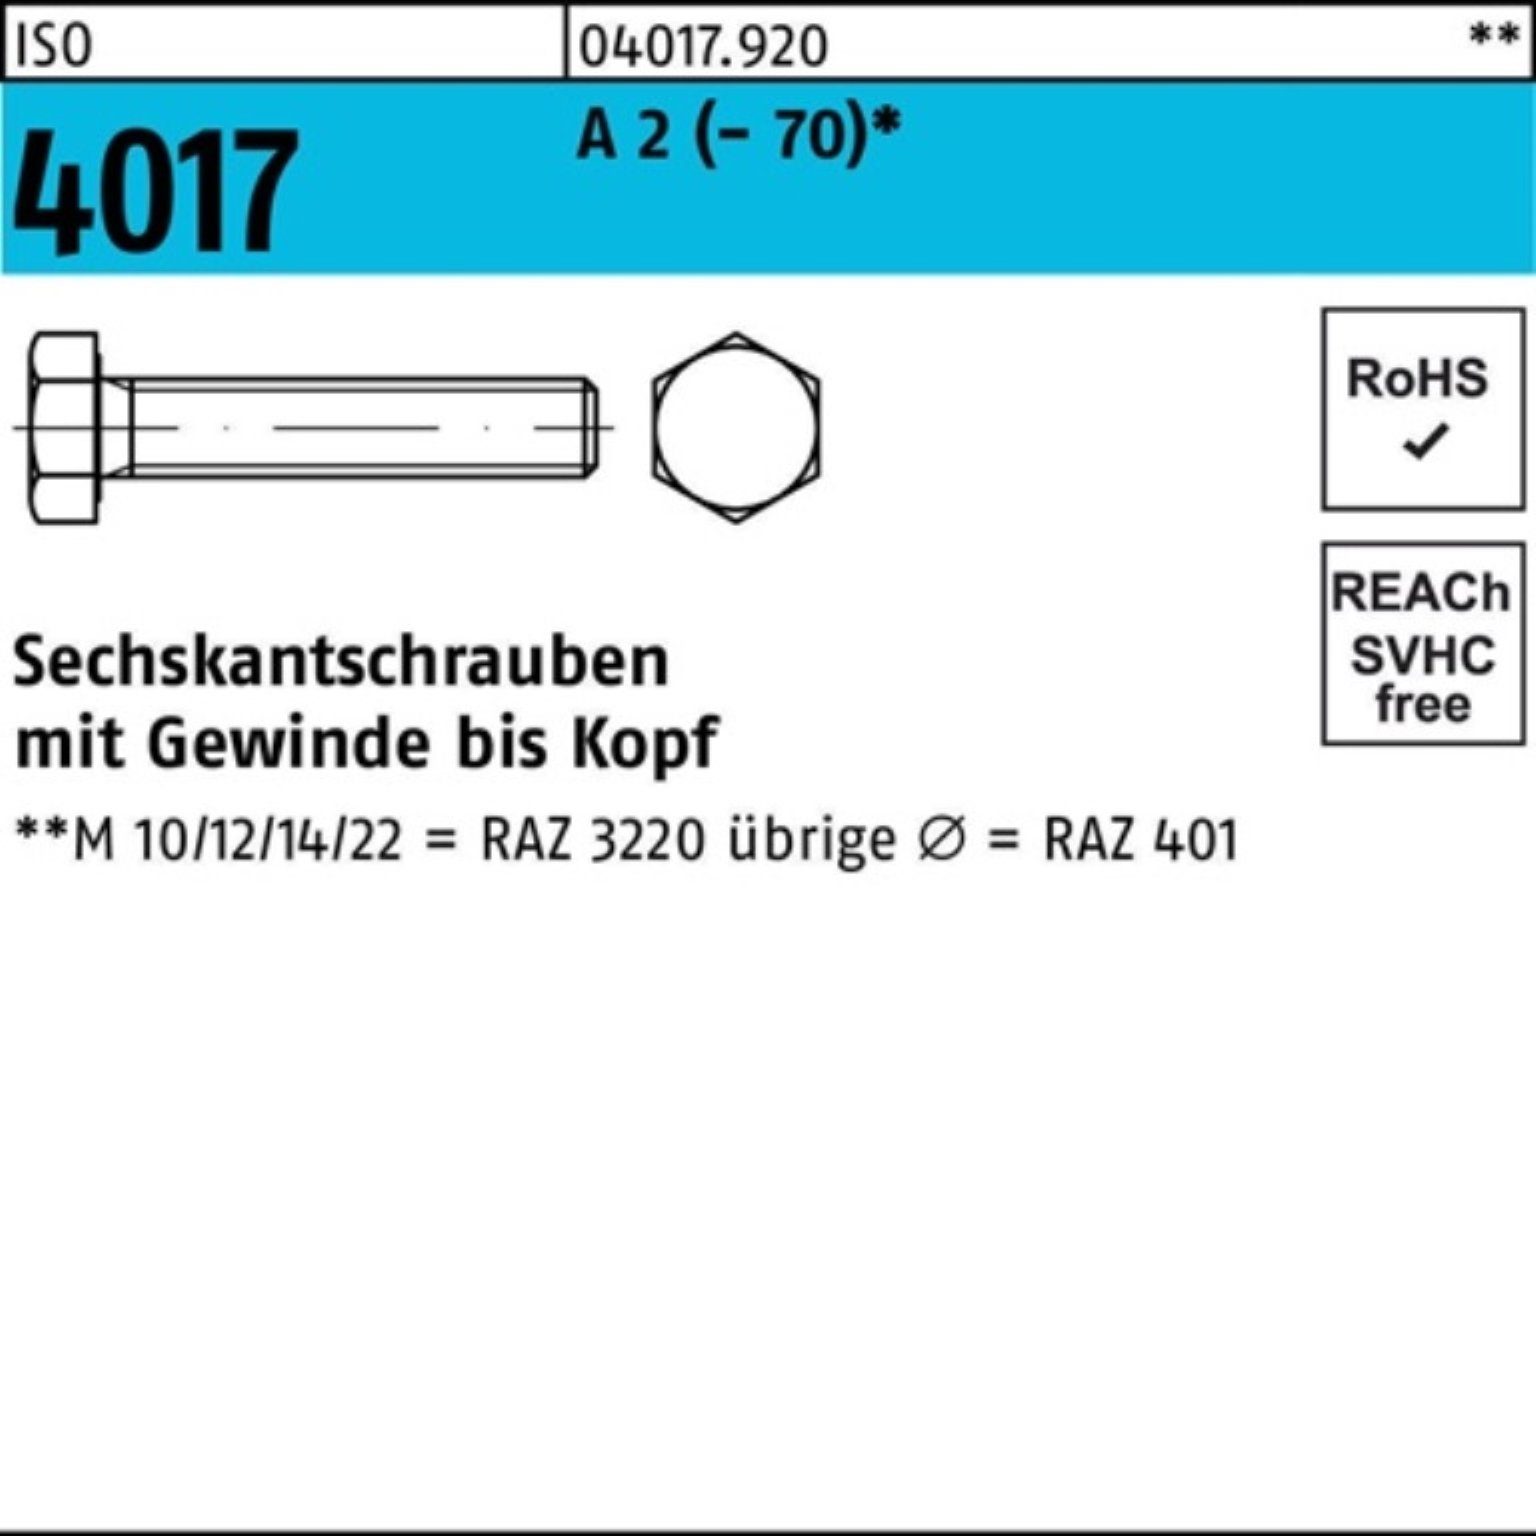 Bufab Sechskantschraube 100er Pack Sechskantschraube ISO 4017 VG M5x 10 A 2 (70) 100 Stück